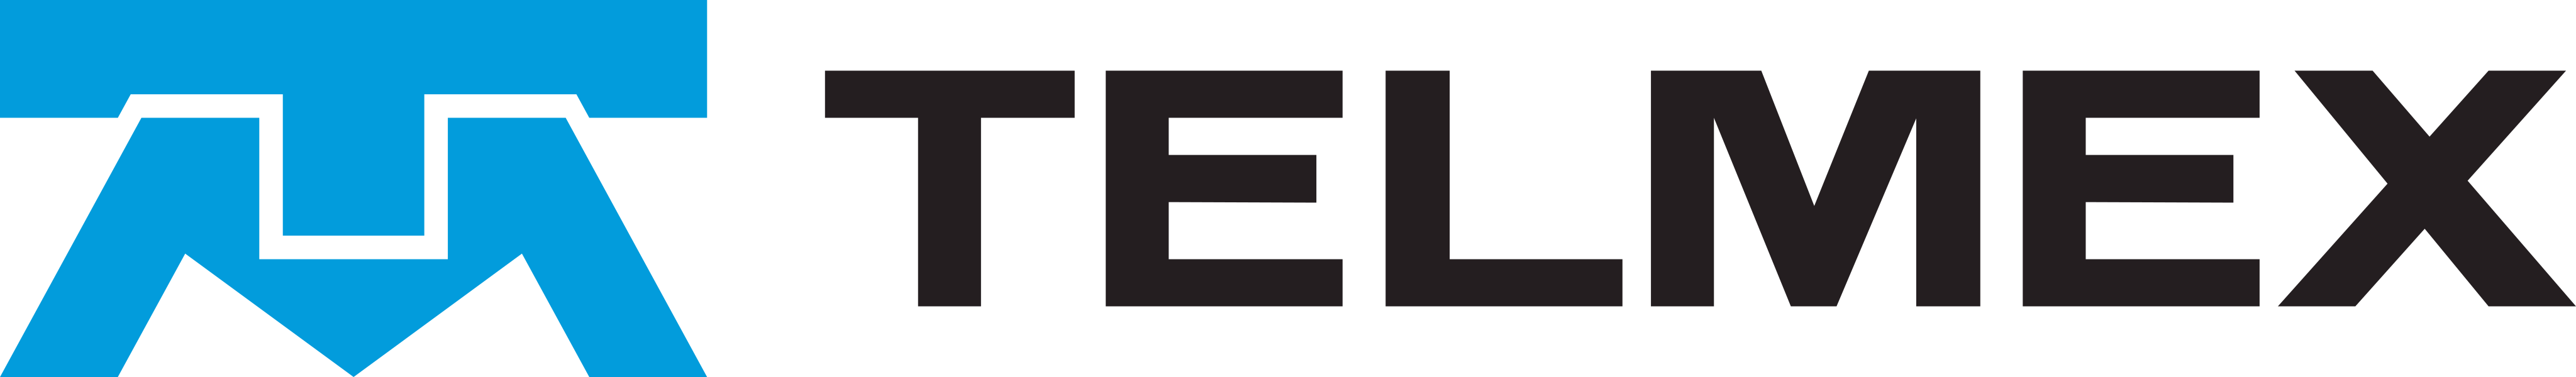 Telmex Logo.